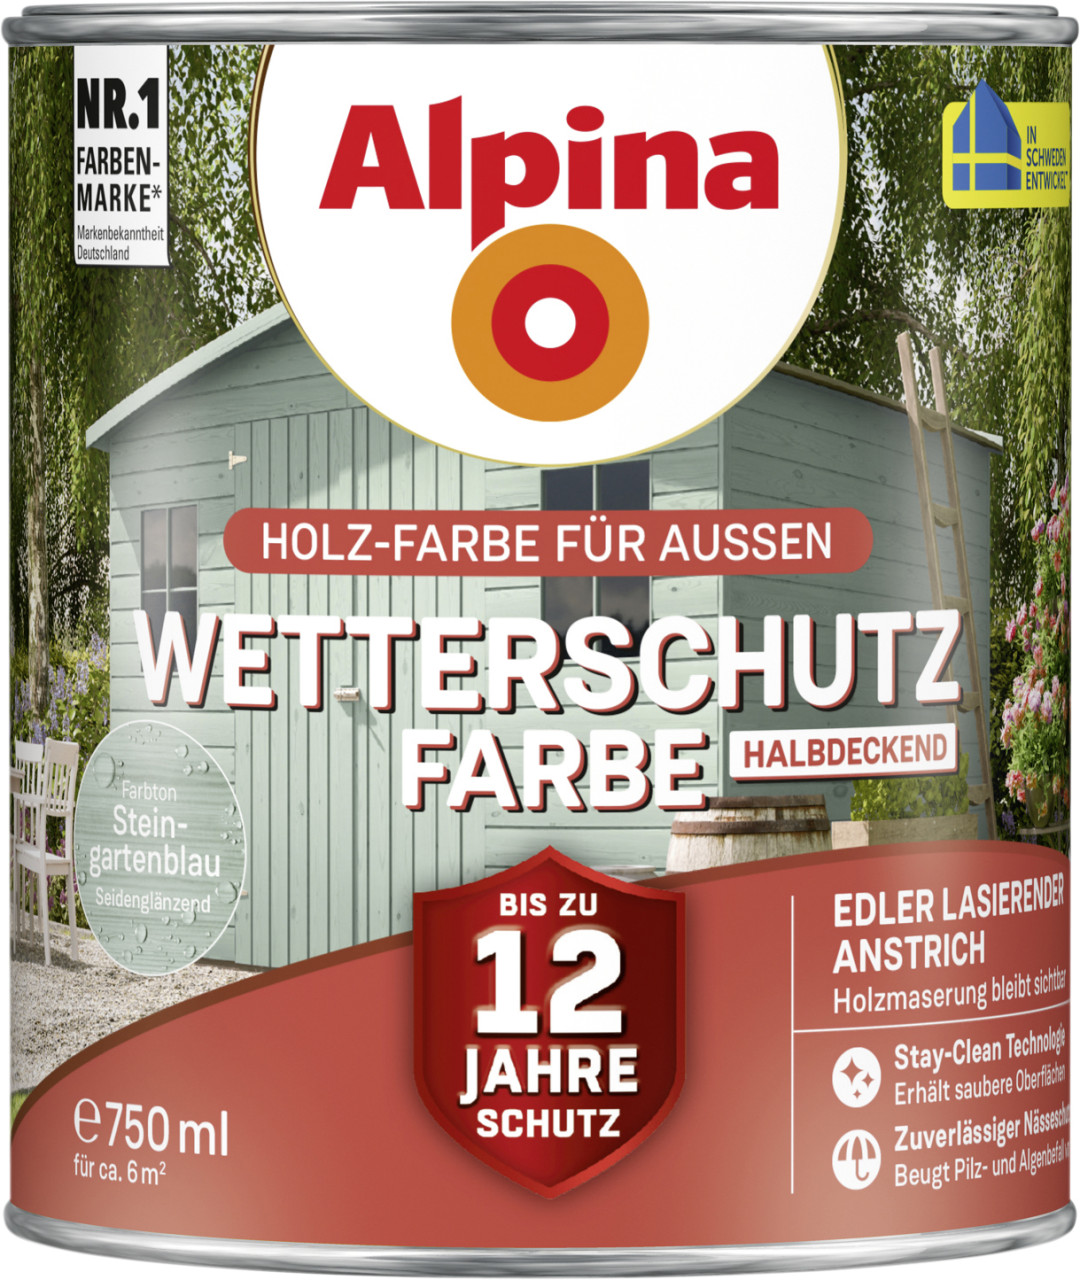 Alpina Wetterschutzfarbe halbdeckend 0,75 L steingartenblau von Alpina